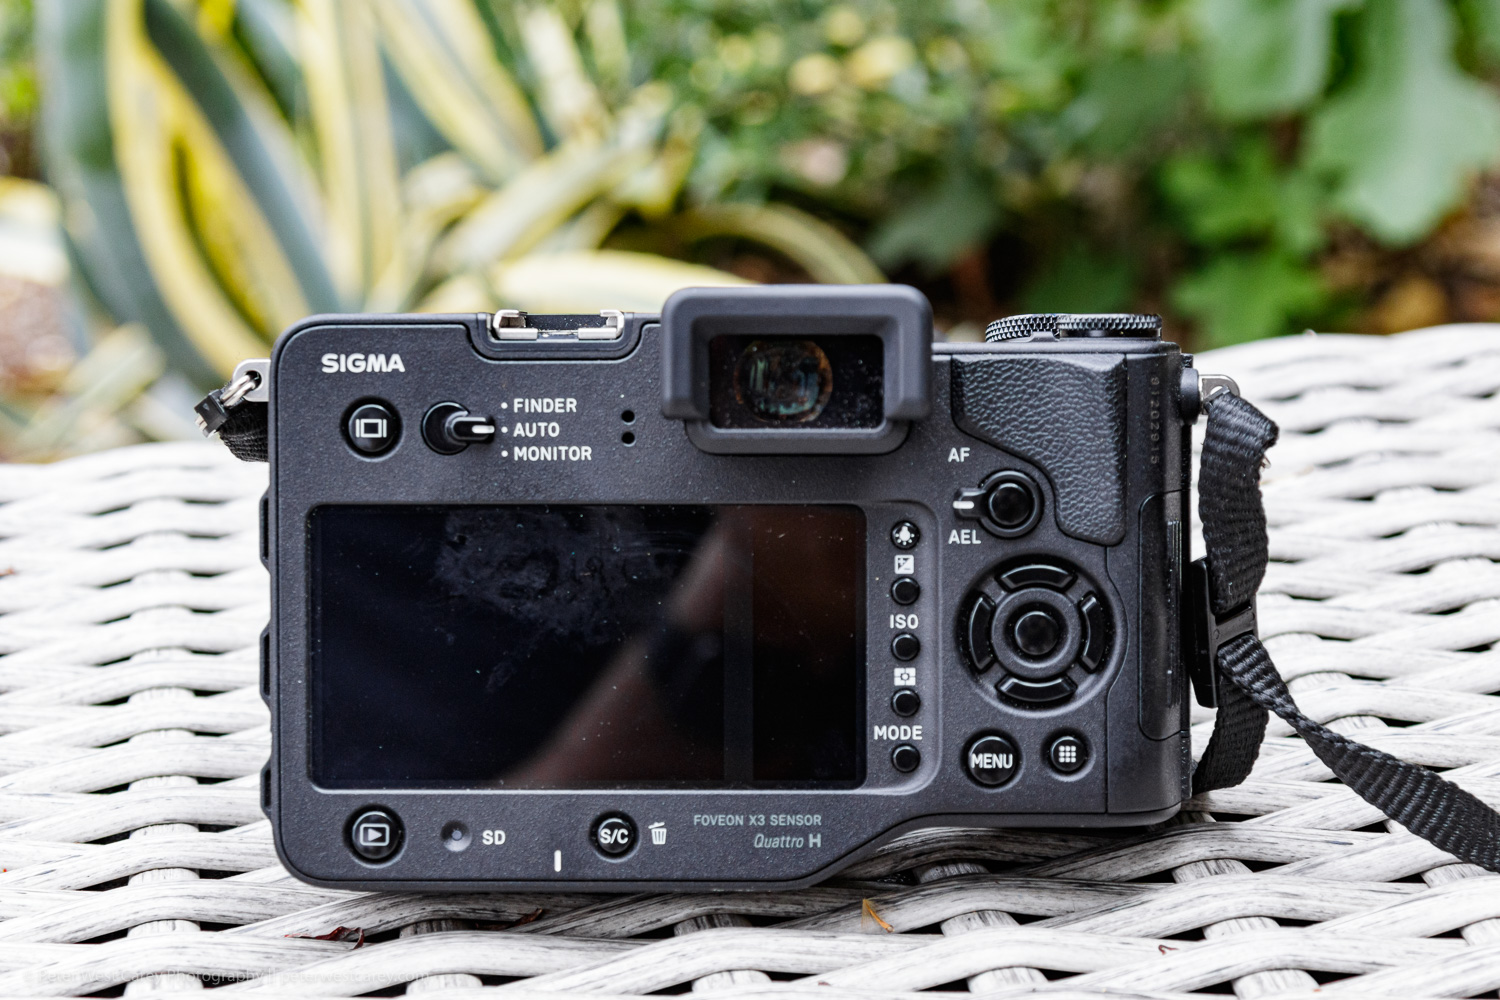 The Sigma sd Quattro H Camera Review